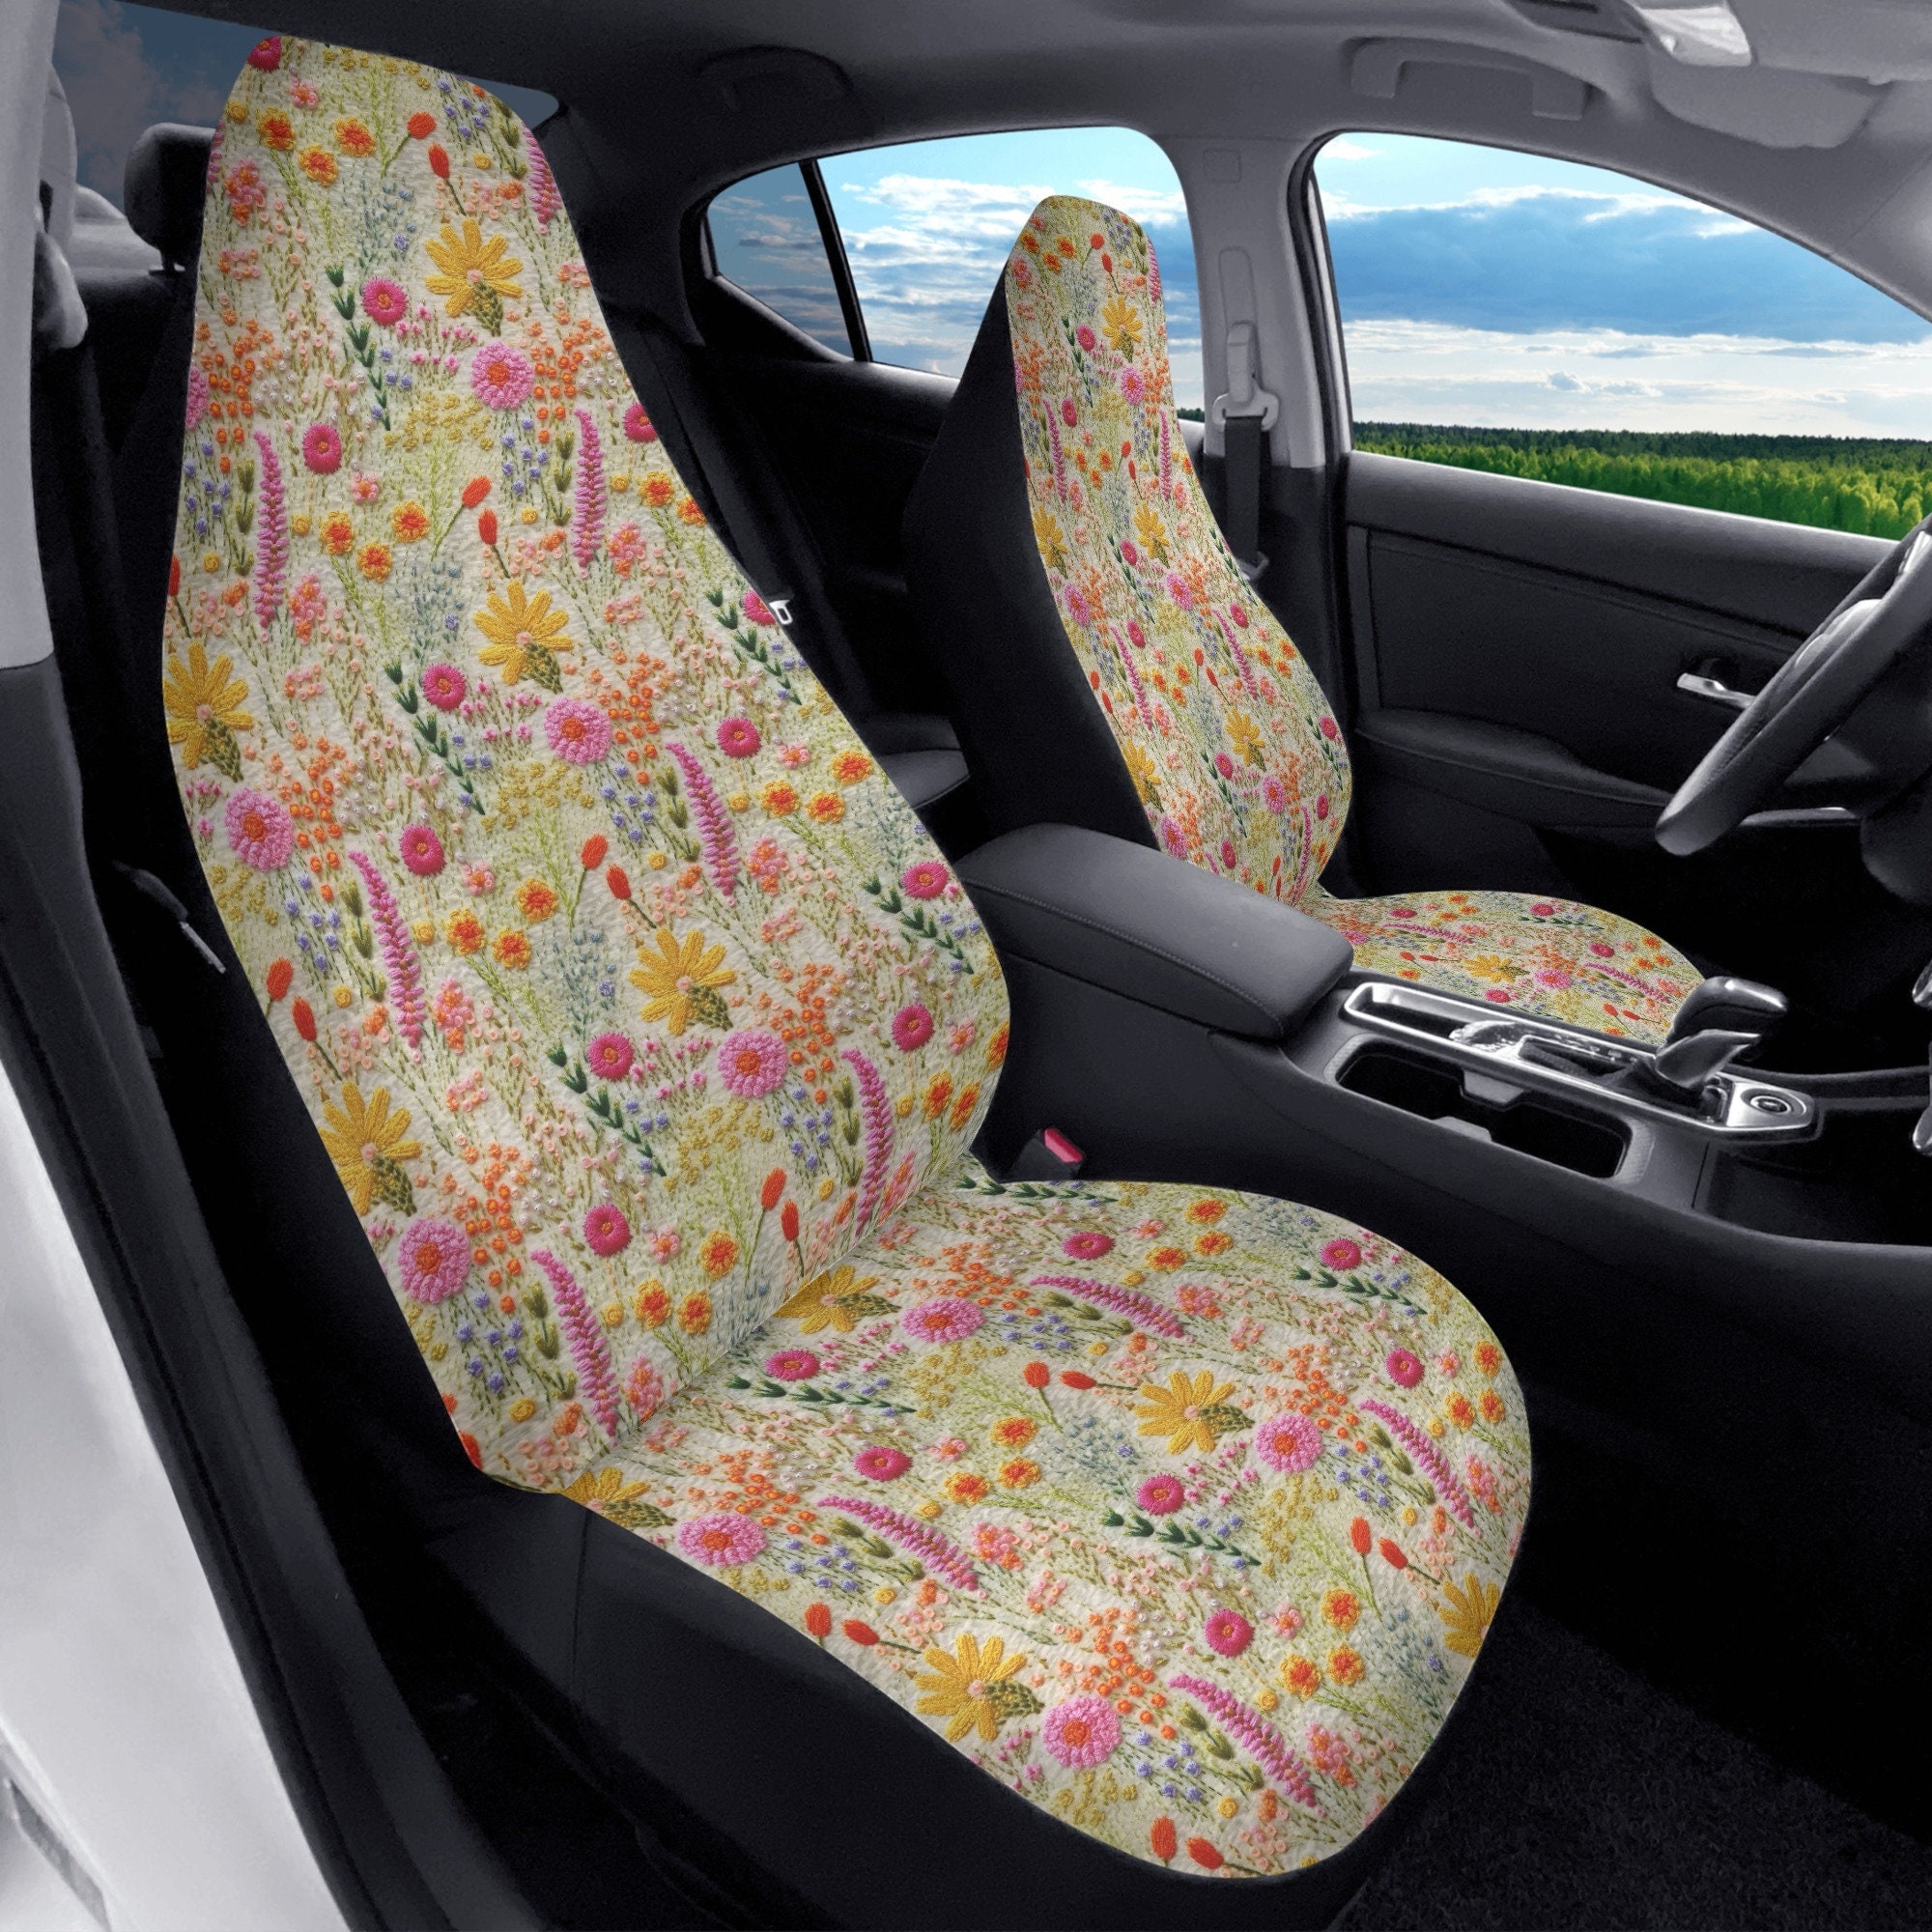 Discover Pink Wildflower Autositzbezug gedruckt Faux Stickerei, Cottagecore Sitzbezug fr Fahrzeug Autositzbezug